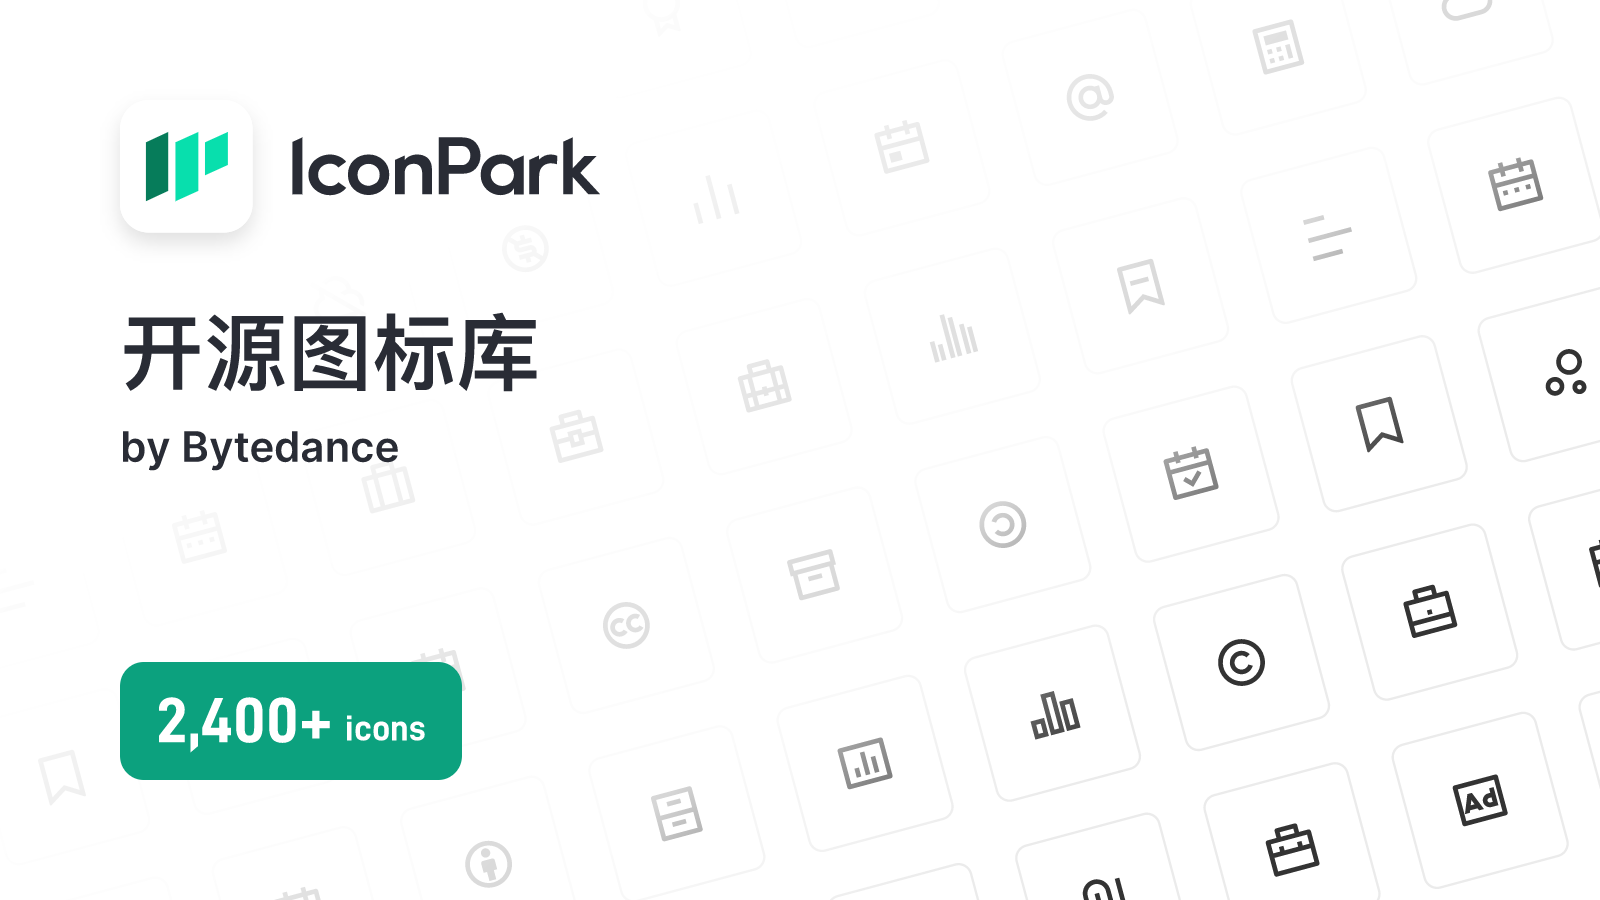 IconPark资源站，这里有你需要的图标，也有属于你的风格。

2400+ 基础图标，29种图标分类，丰富多彩的资源库免费使用。